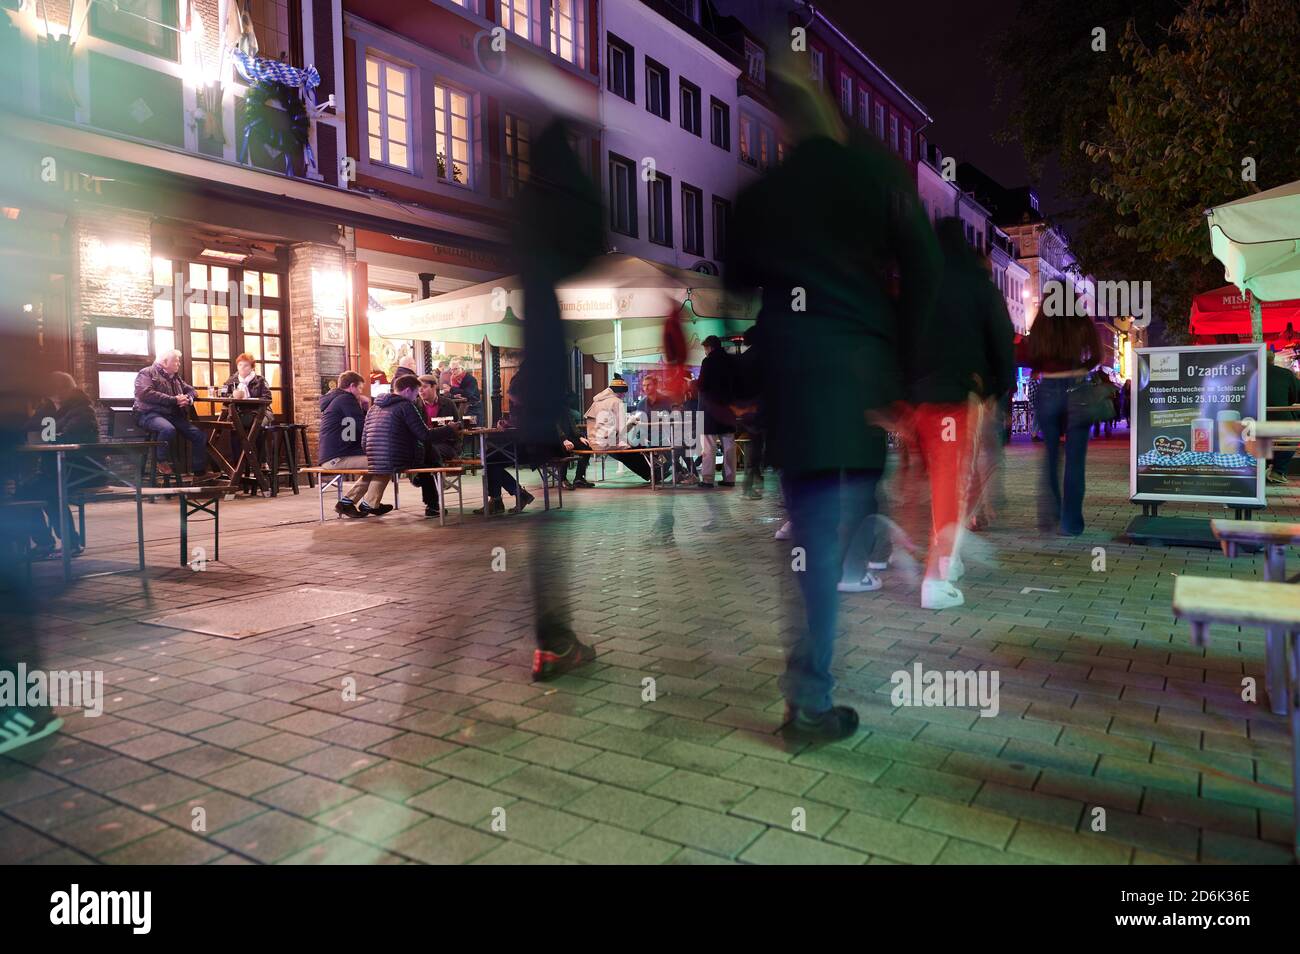 Duesseldorf, Germania. 17 Ott 2020. Gli ospiti potranno gustare cibo e bevande nel centro storico di Düsseldorf prima della chiusura, a partire dalle 11. Credit: Henning Kaiser/dpa/Alamy Live News Foto Stock